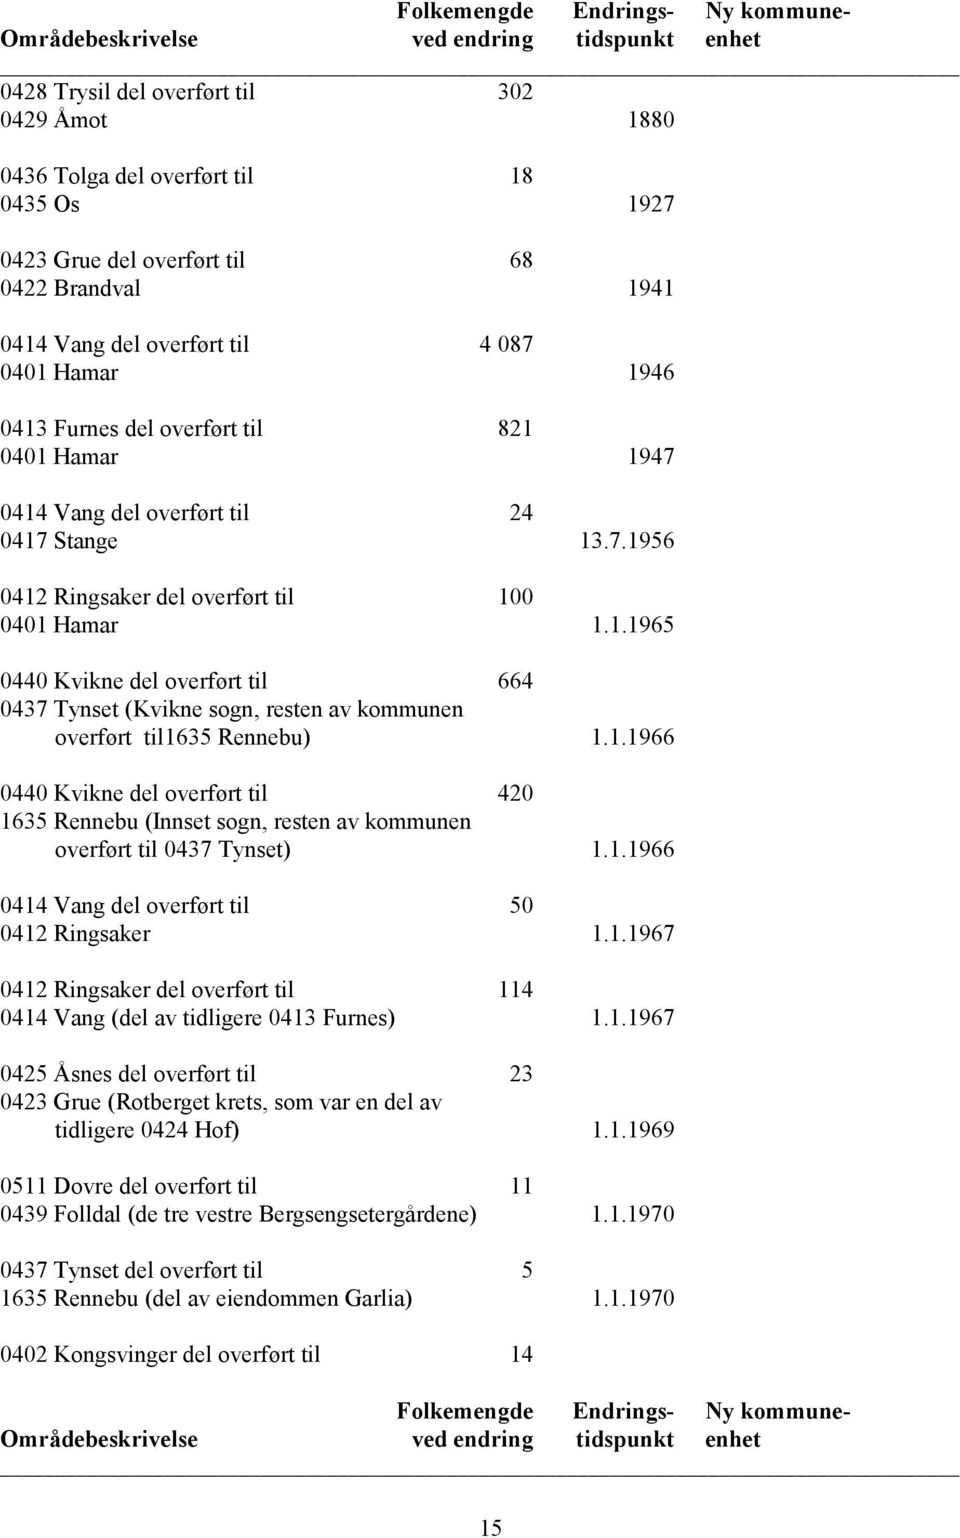 1.1966 0440 Kvikne del overført til 420 1635 Rennebu (Innset sogn, resten av kommunen overført til 0437 Tynset) 1.1.1966 0414 Vang del overført til 50 0412 Ringsaker 1.1.1967 0412 Ringsaker del overført til 114 0414 Vang (del av tidligere 0413 Furnes) 1.